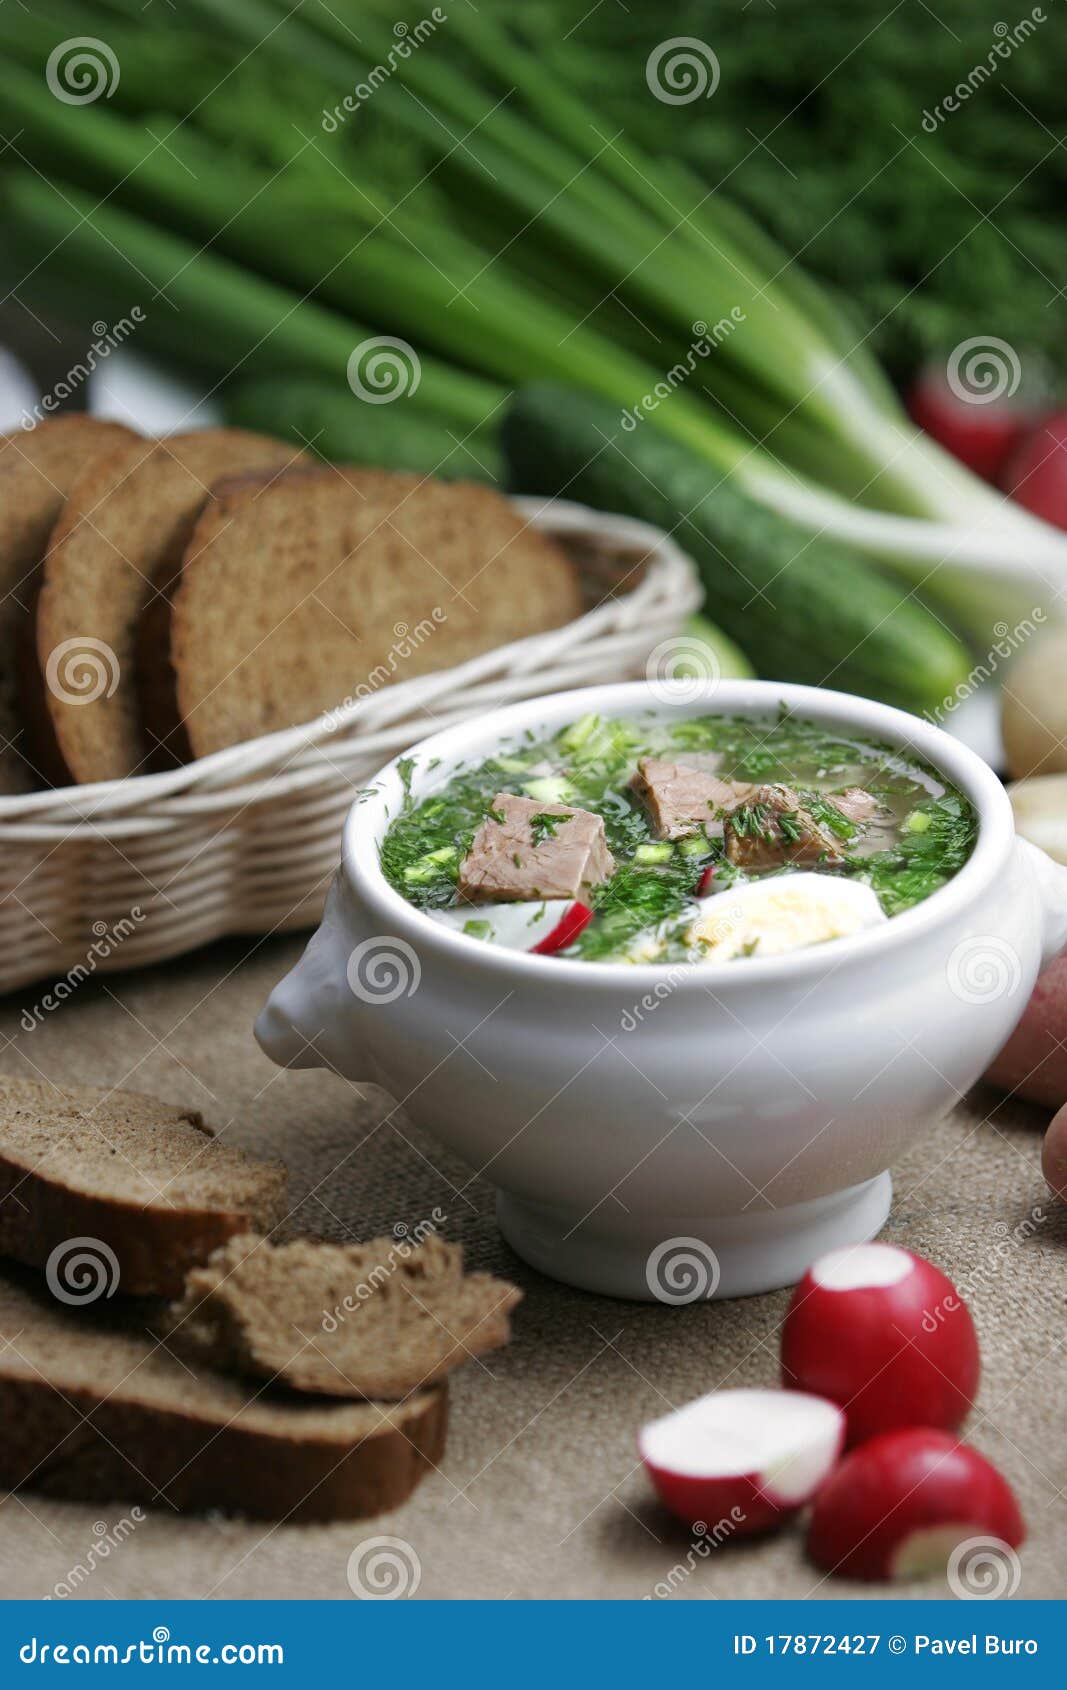 cold vegetable kefir soup